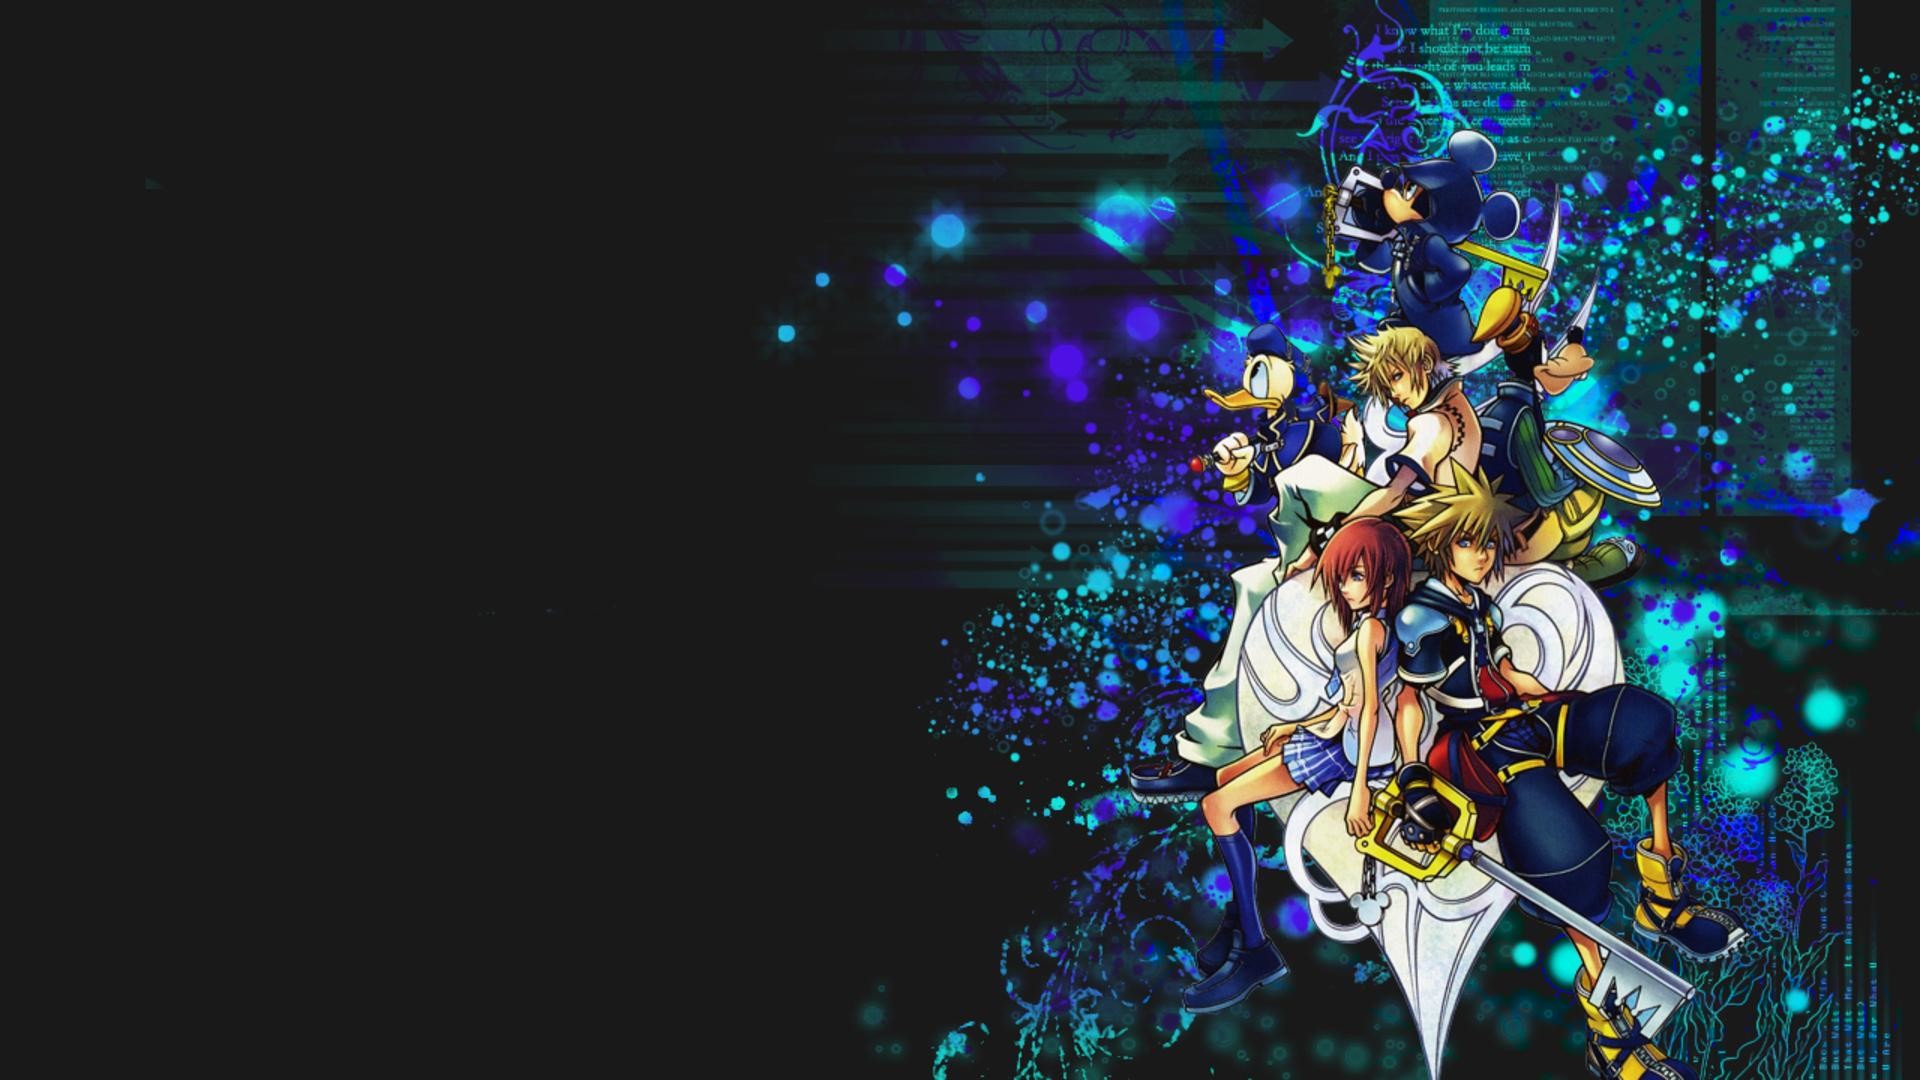 Kingdom Hearts Wallpapers Hd5 600x338 1920x1080